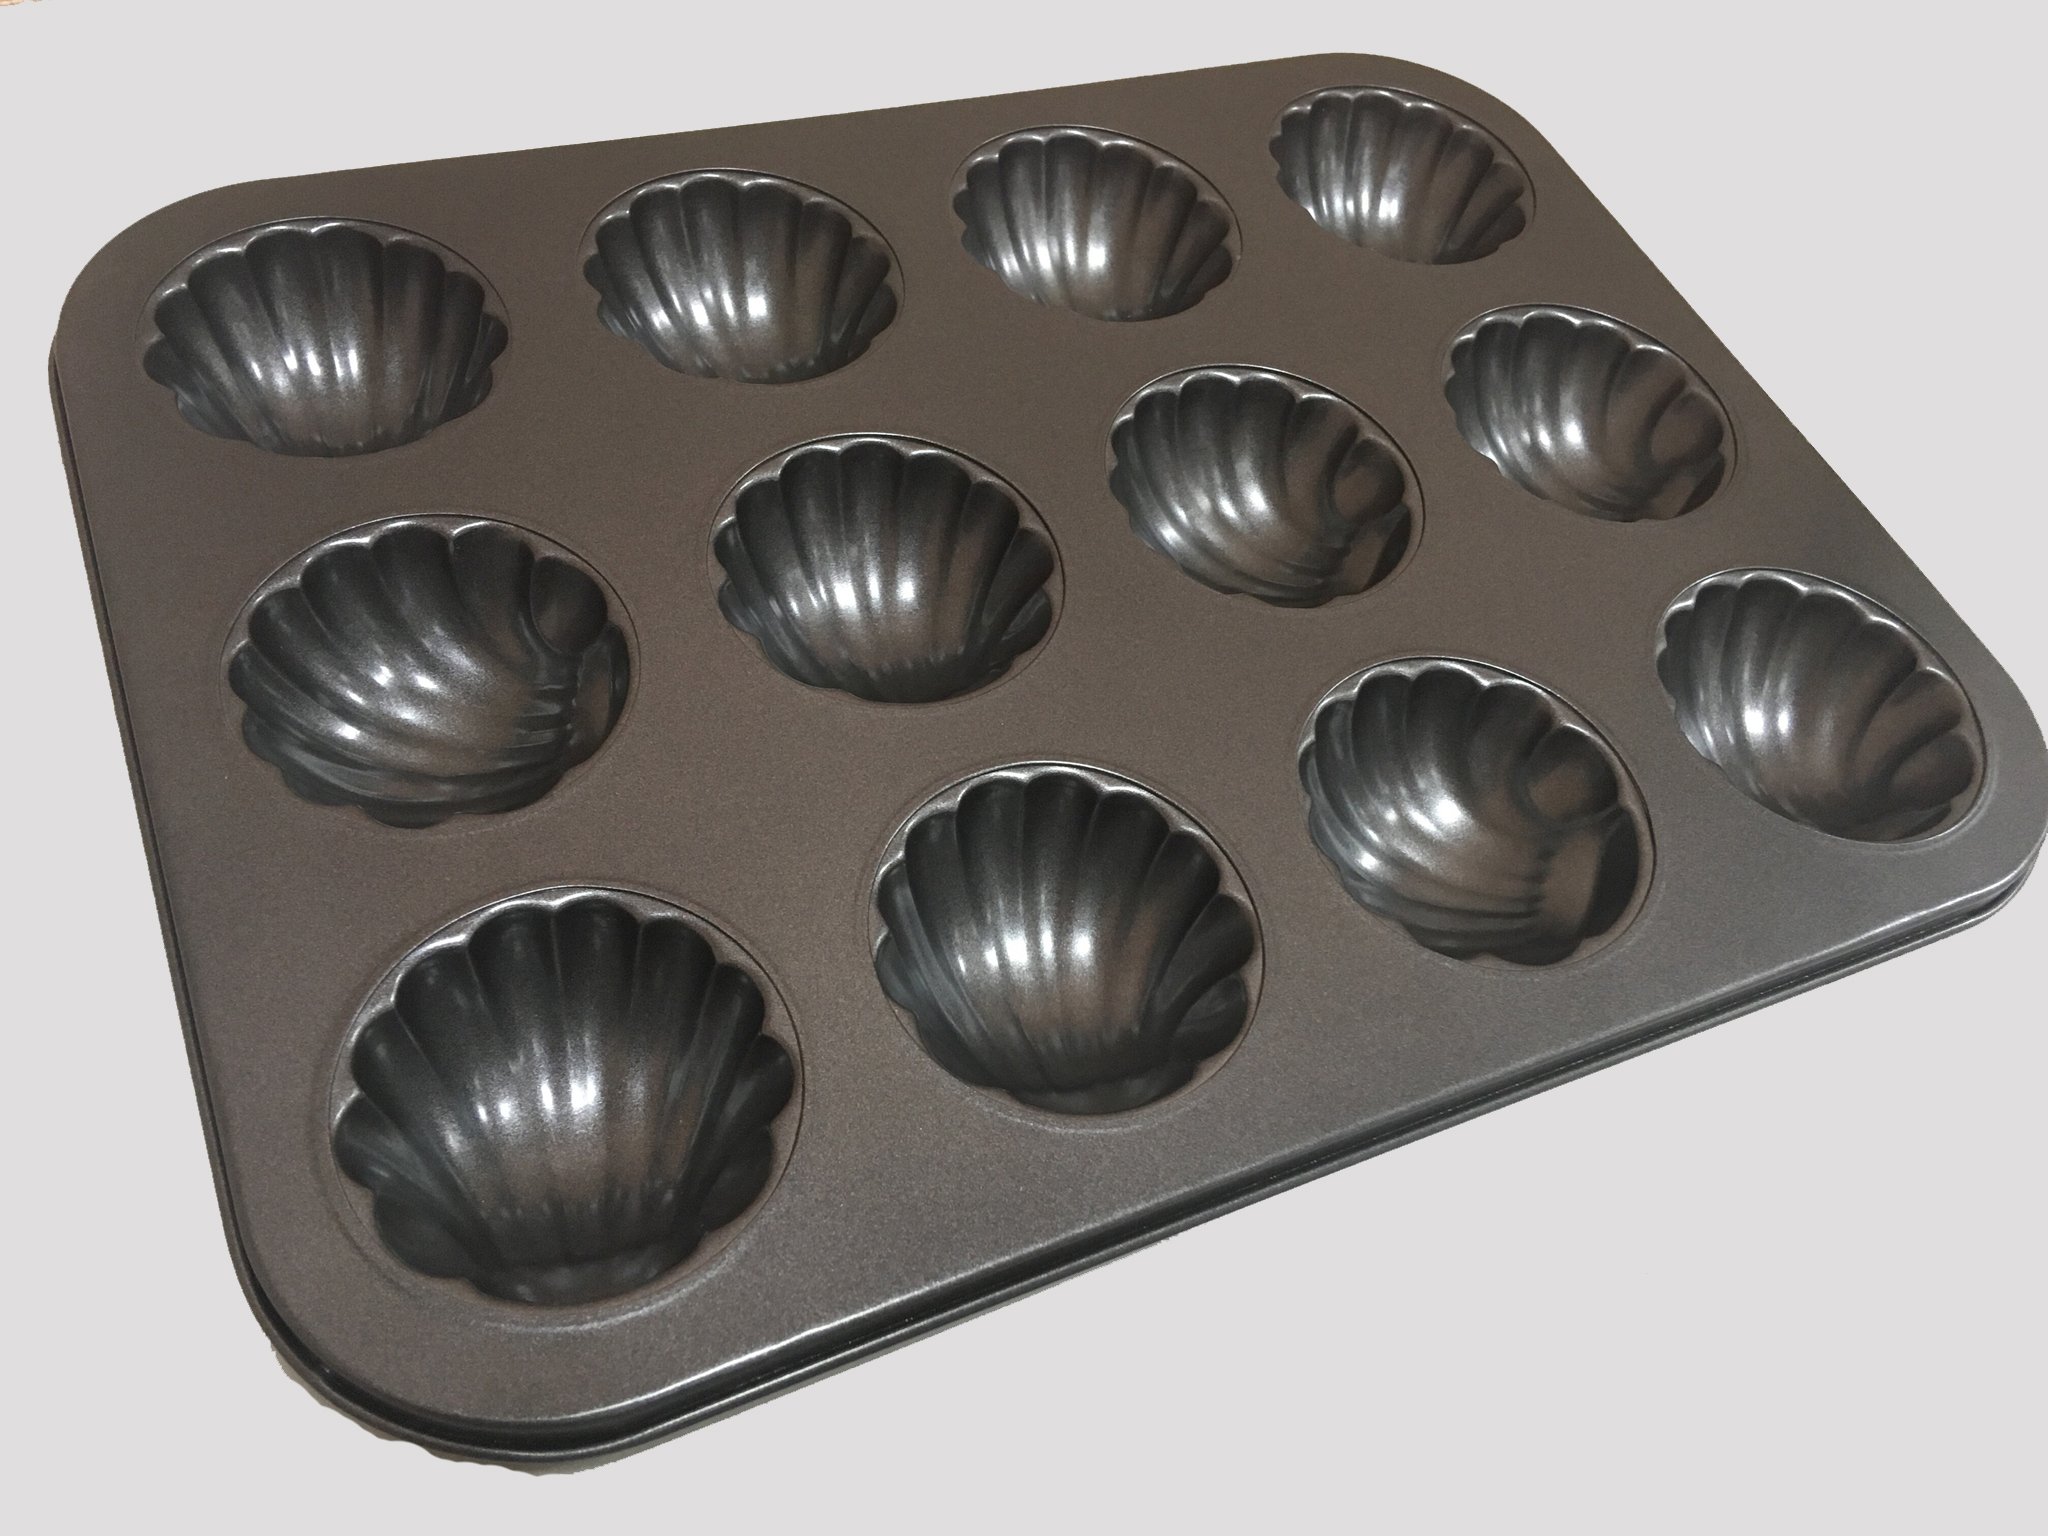 Купить формы для выпечки печенья. 101.330.47 Форма для выпечки. O.M.S. Сollection форма для выпечки 26 см. Формочки для выпечки печенья. Форма ракушки для выпечки.